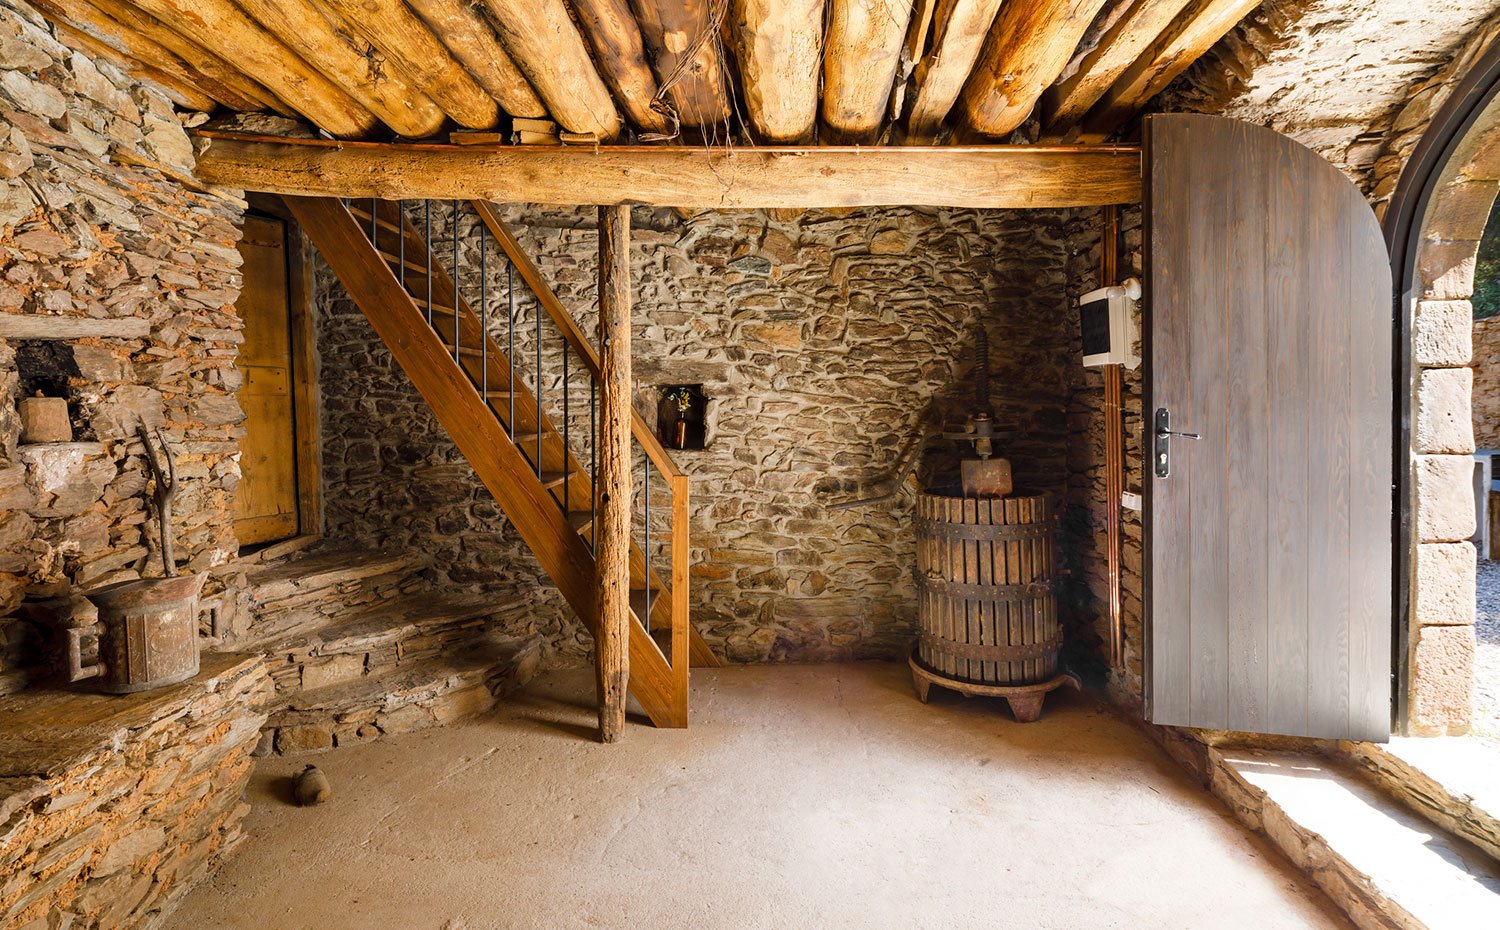 Puerta de acceso de madera, estrura y paredes de piedra, escaleras de madera y vigas antiguas de madera